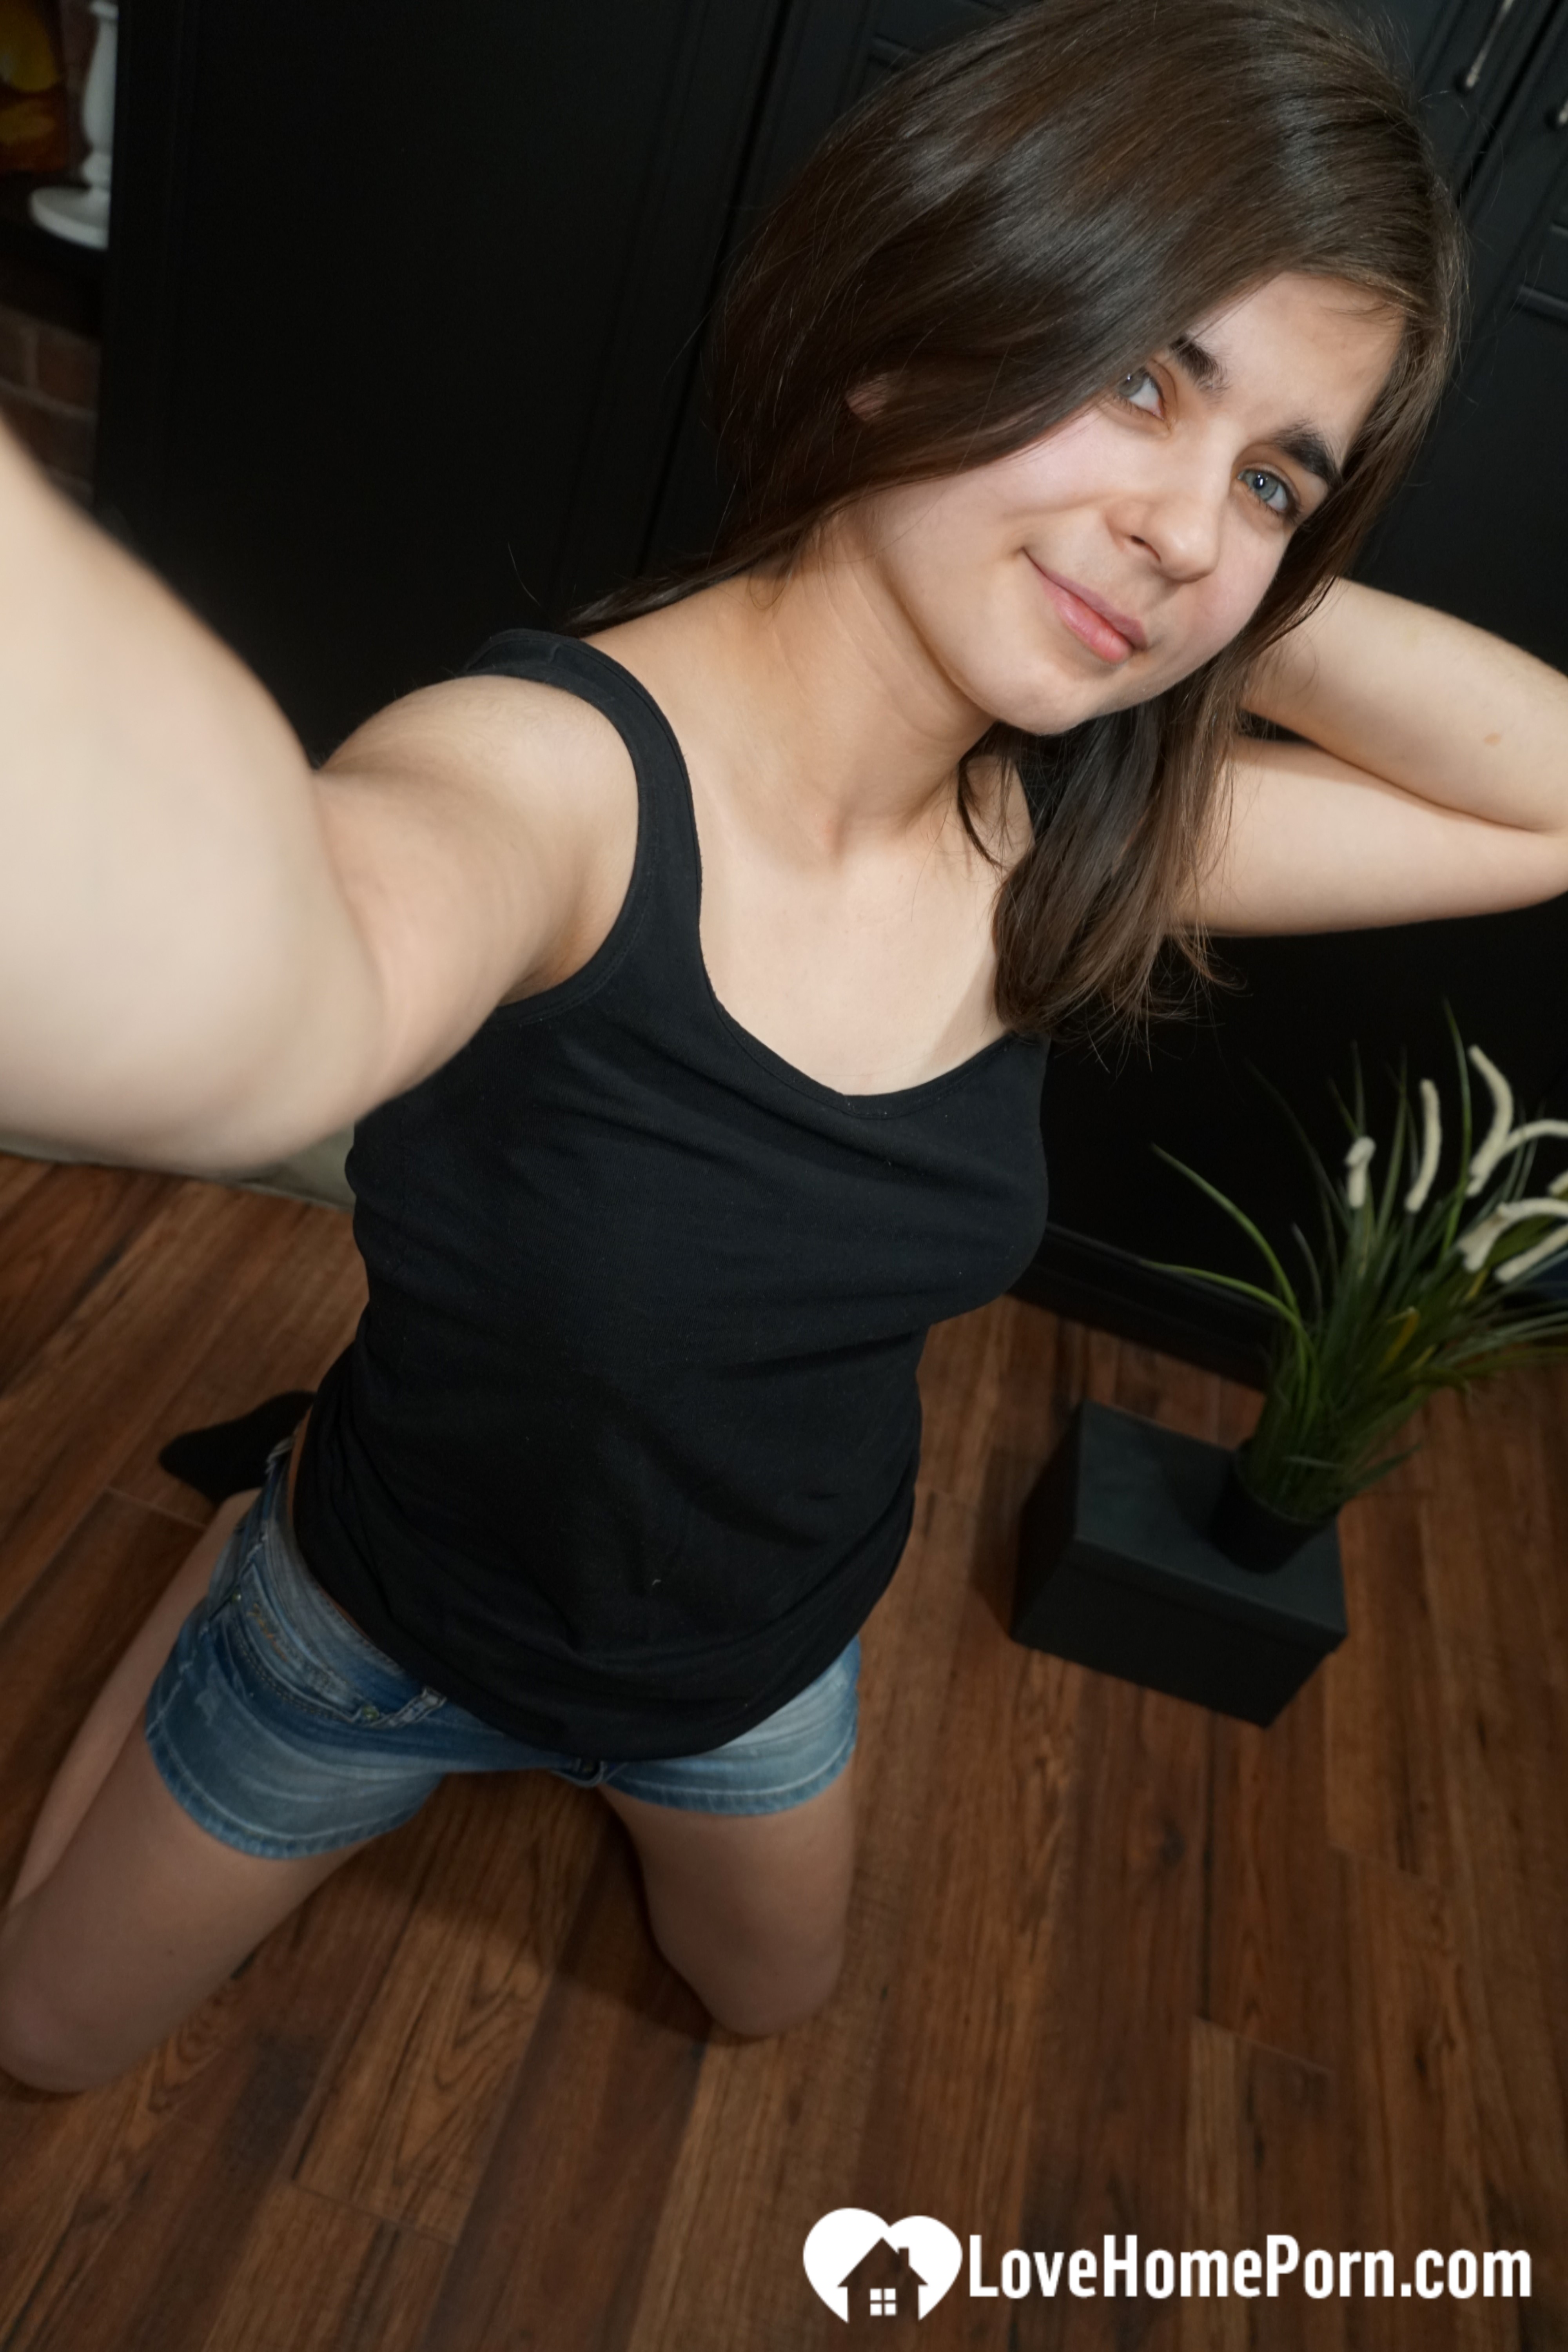 Brunette teen just loves to strip during selfies